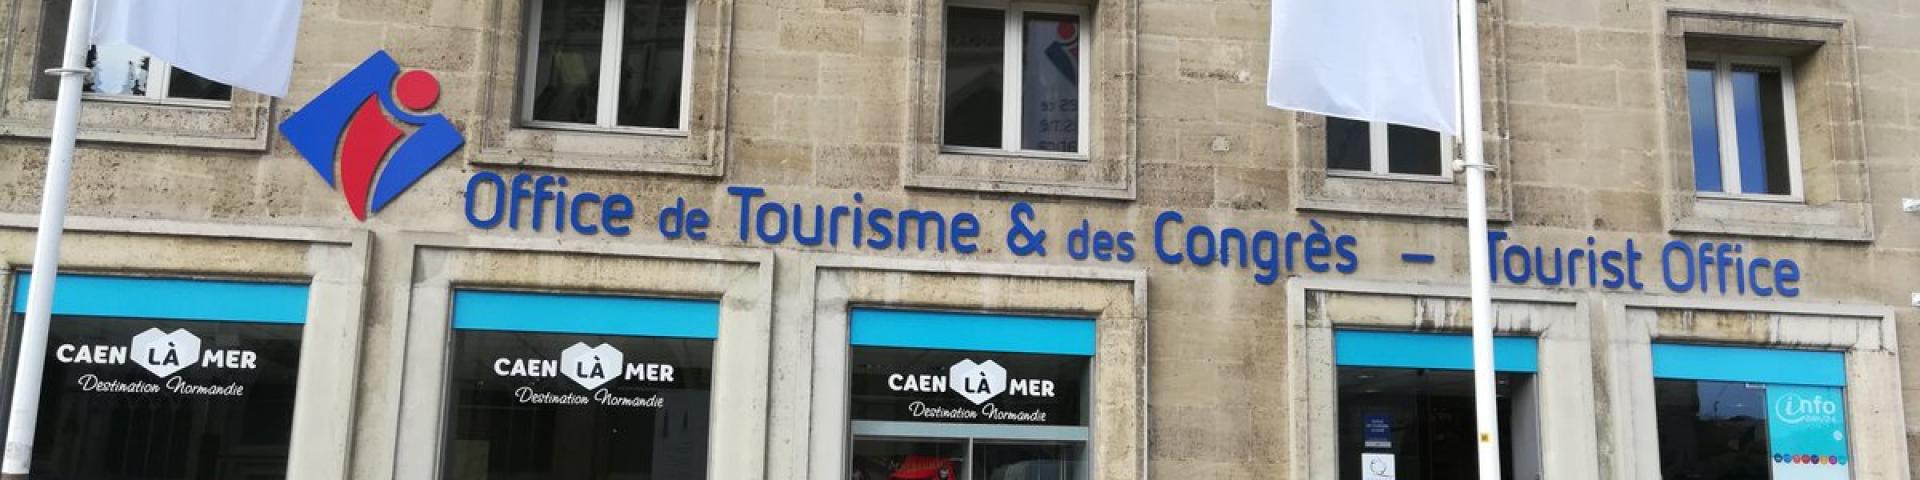 Office de tourisme Caen - ESITC Caen - Partenaires